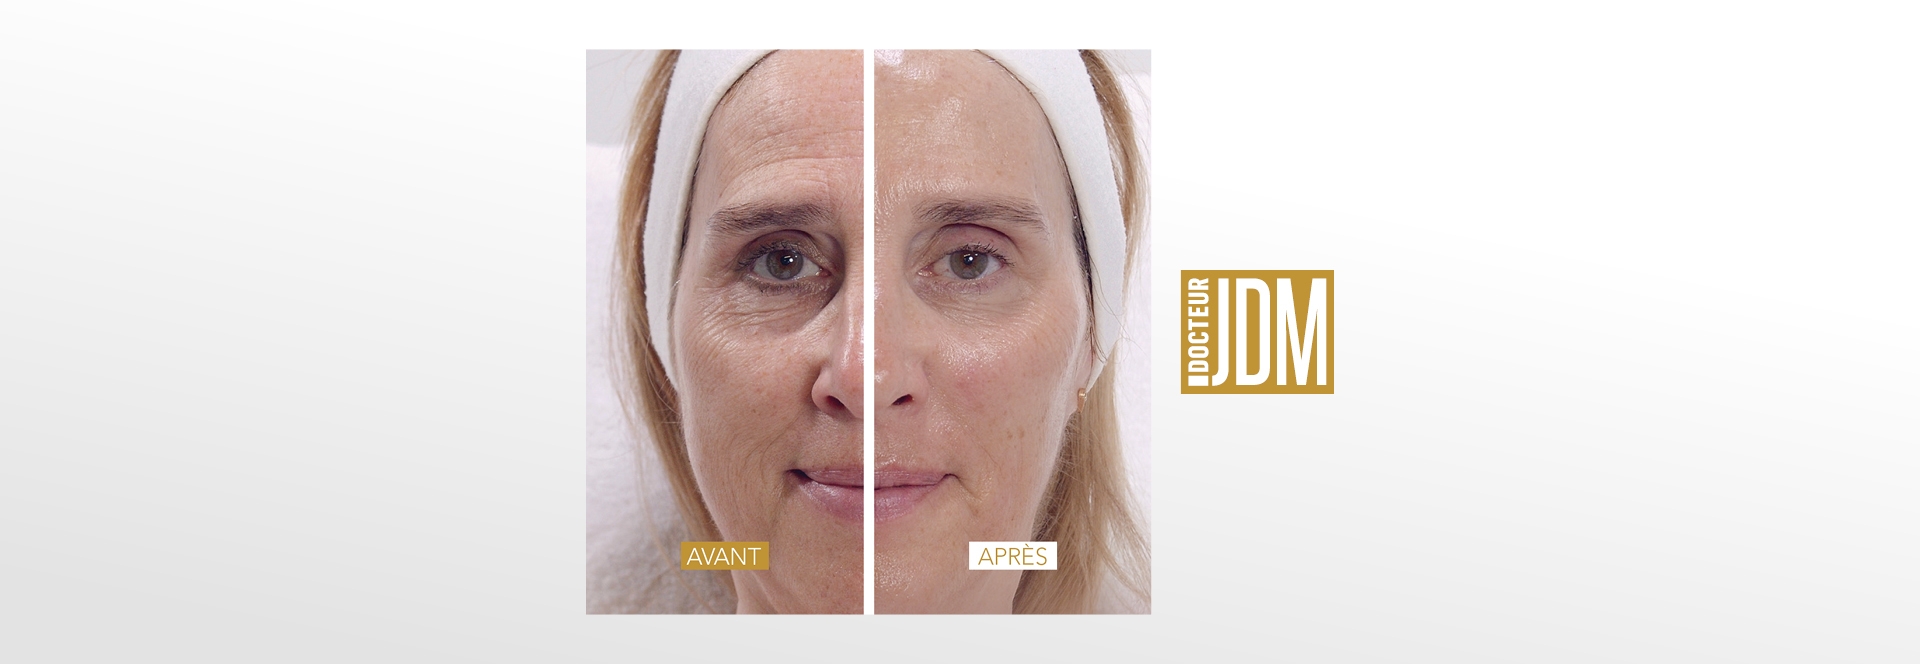 Tratamiento Visible Age Reverse creado por Doctor JDM